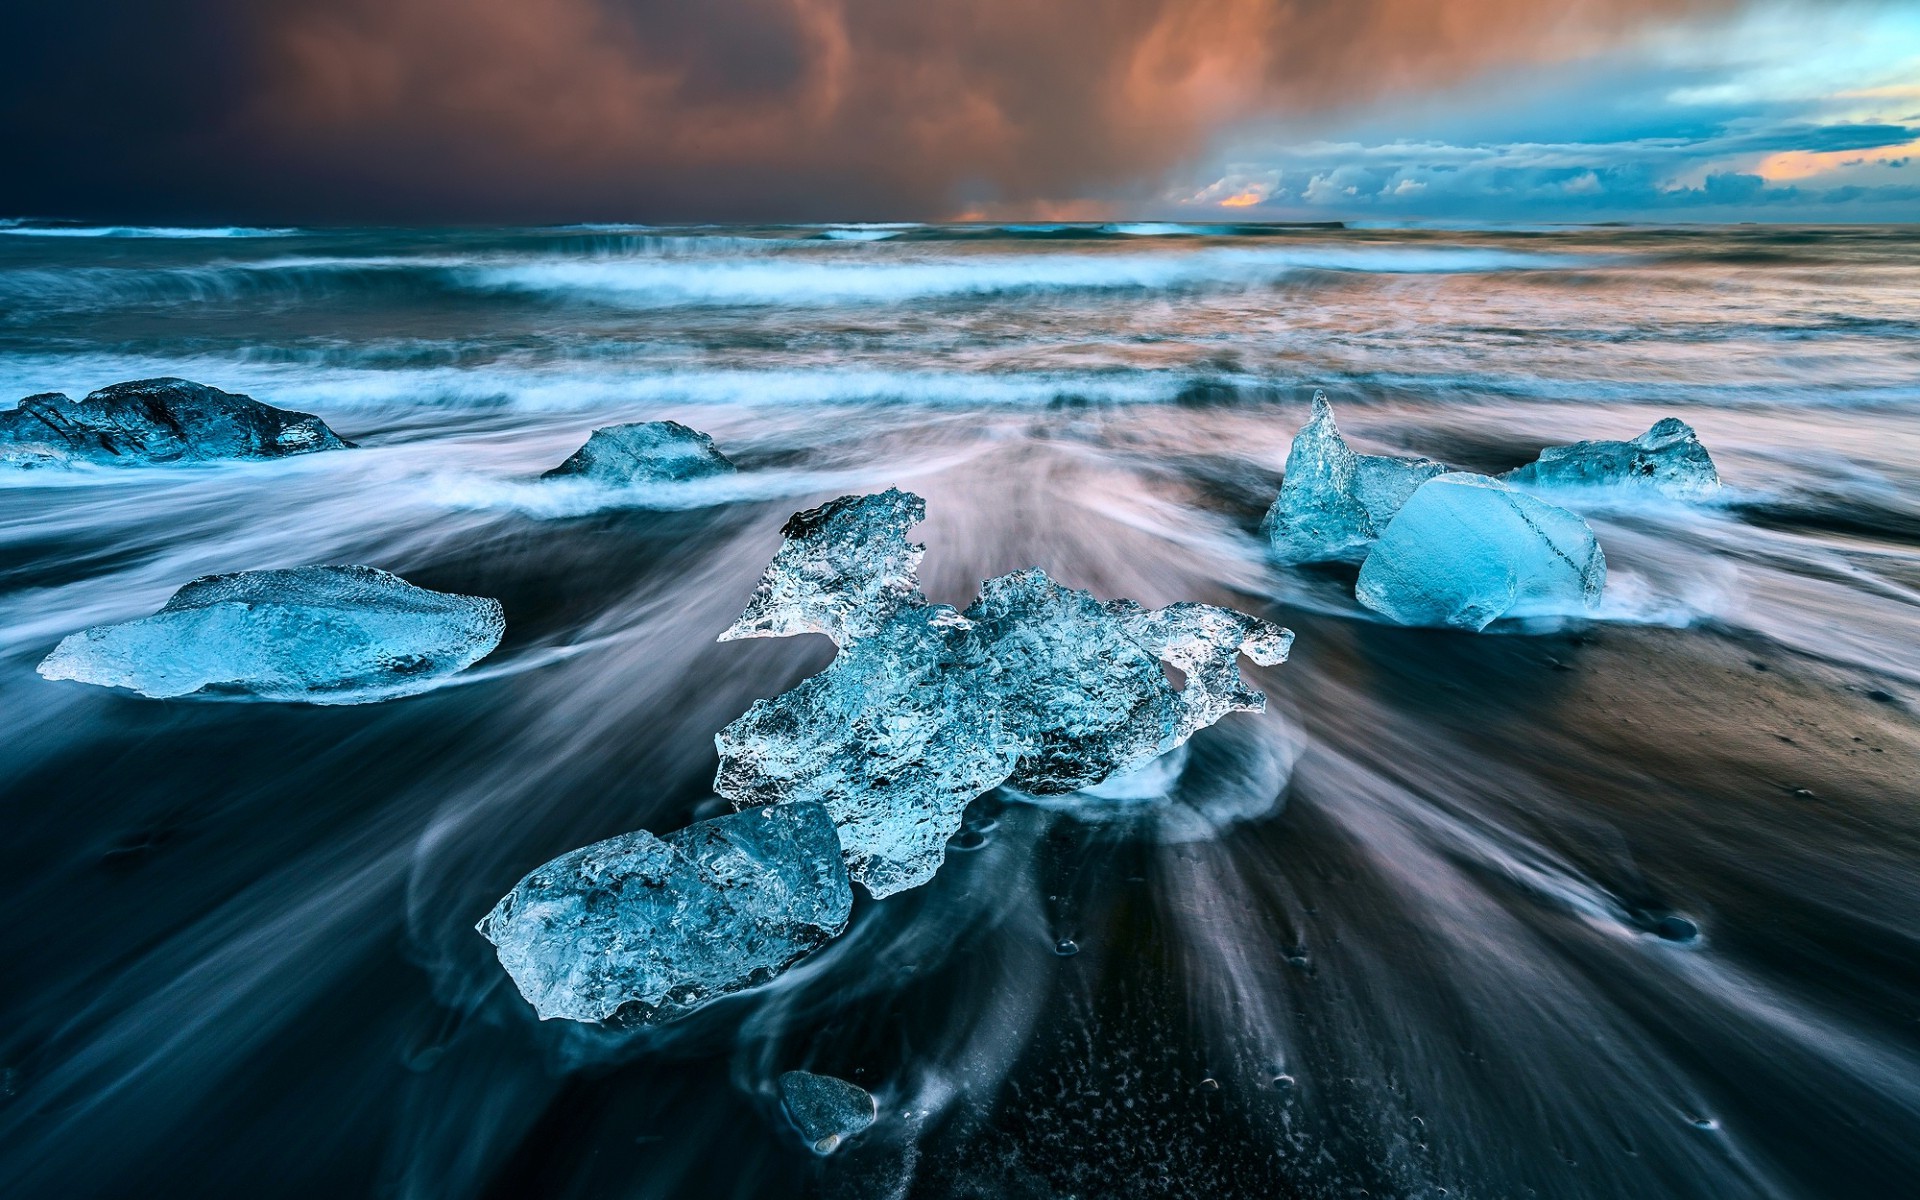 ghiaccio wallpaper hd,blu,natura,acqua,acqua,mare